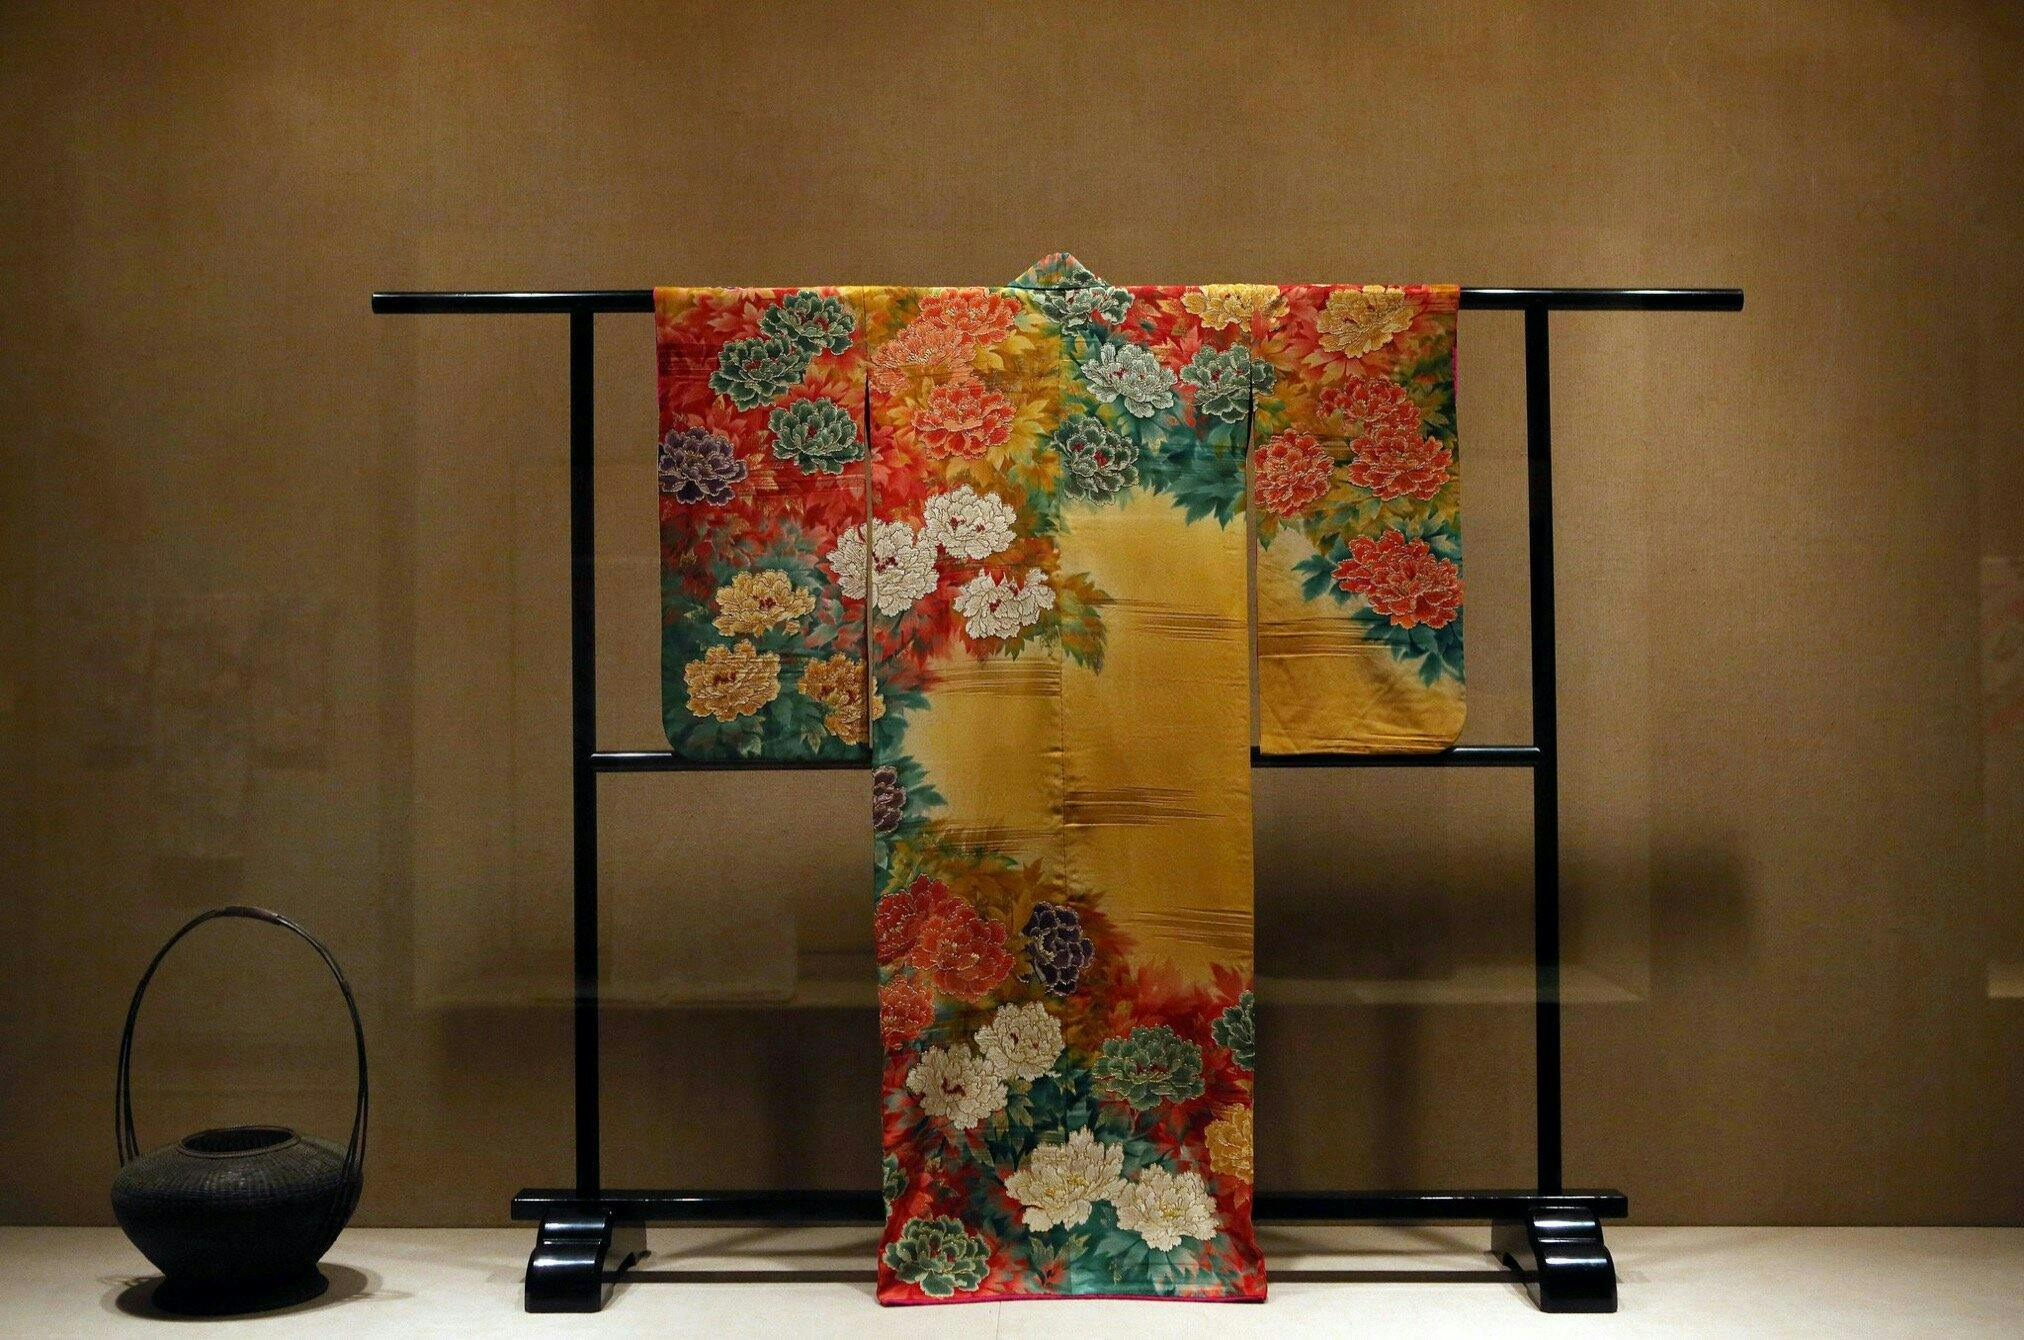 clothing apparel robe fashion gown kimono